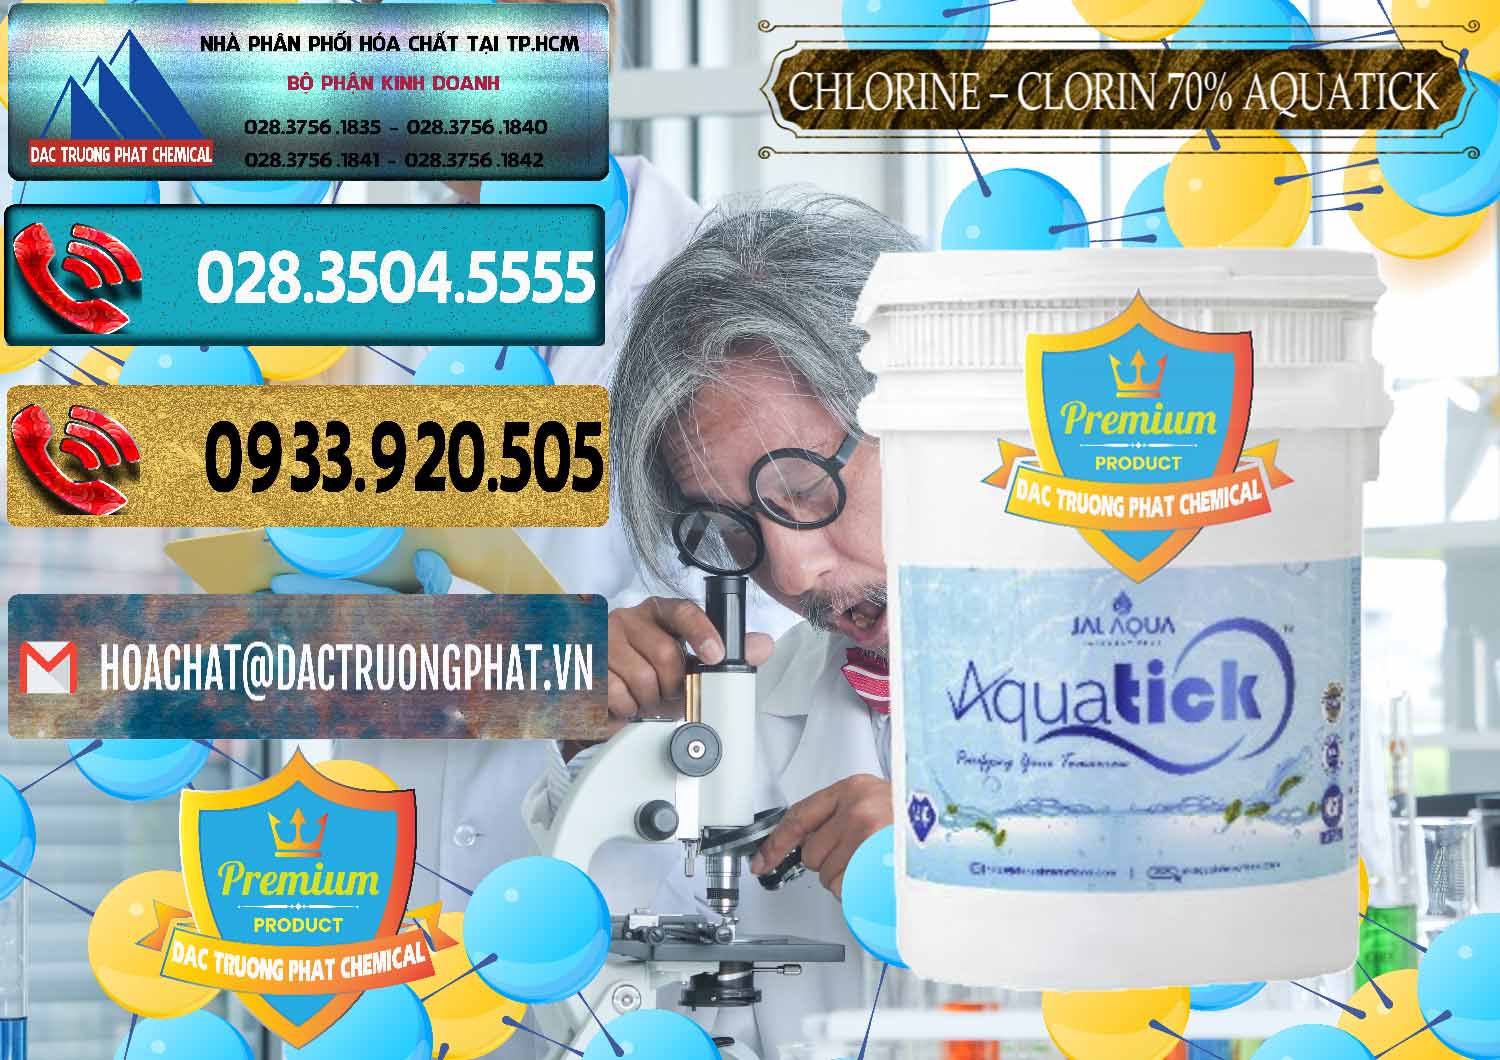 Cty bán _ phân phối Chlorine – Clorin 70% Aquatick Thùng Cao Jal Aqua Ấn Độ India - 0237 - Nơi cung ứng - phân phối hóa chất tại TP.HCM - hoachatdetnhuom.com